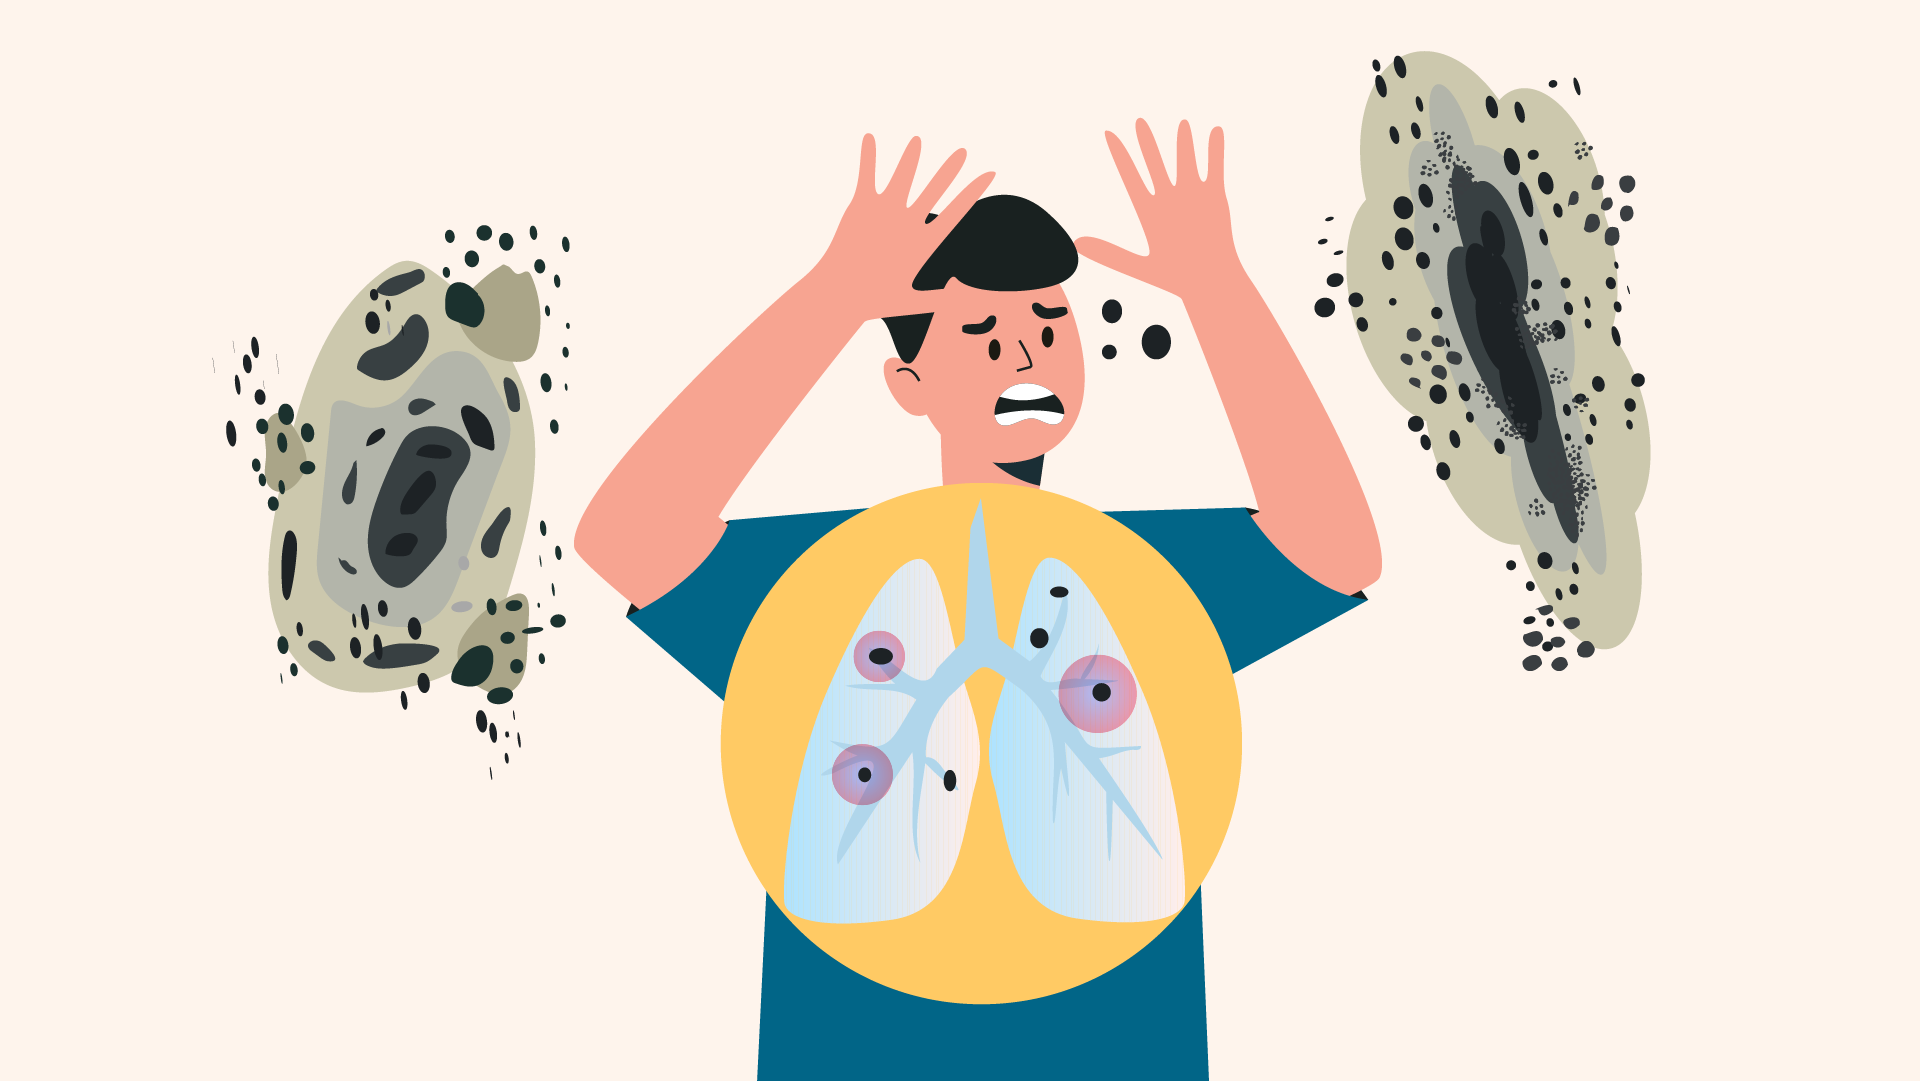 Illustrazione di una persona che respira visualizzando in modo evidente le muffe e spore che arrivano ai polmoni. Questa rappresentazione aiuta a comprendere i possibili problemi per problemi legati all'asma